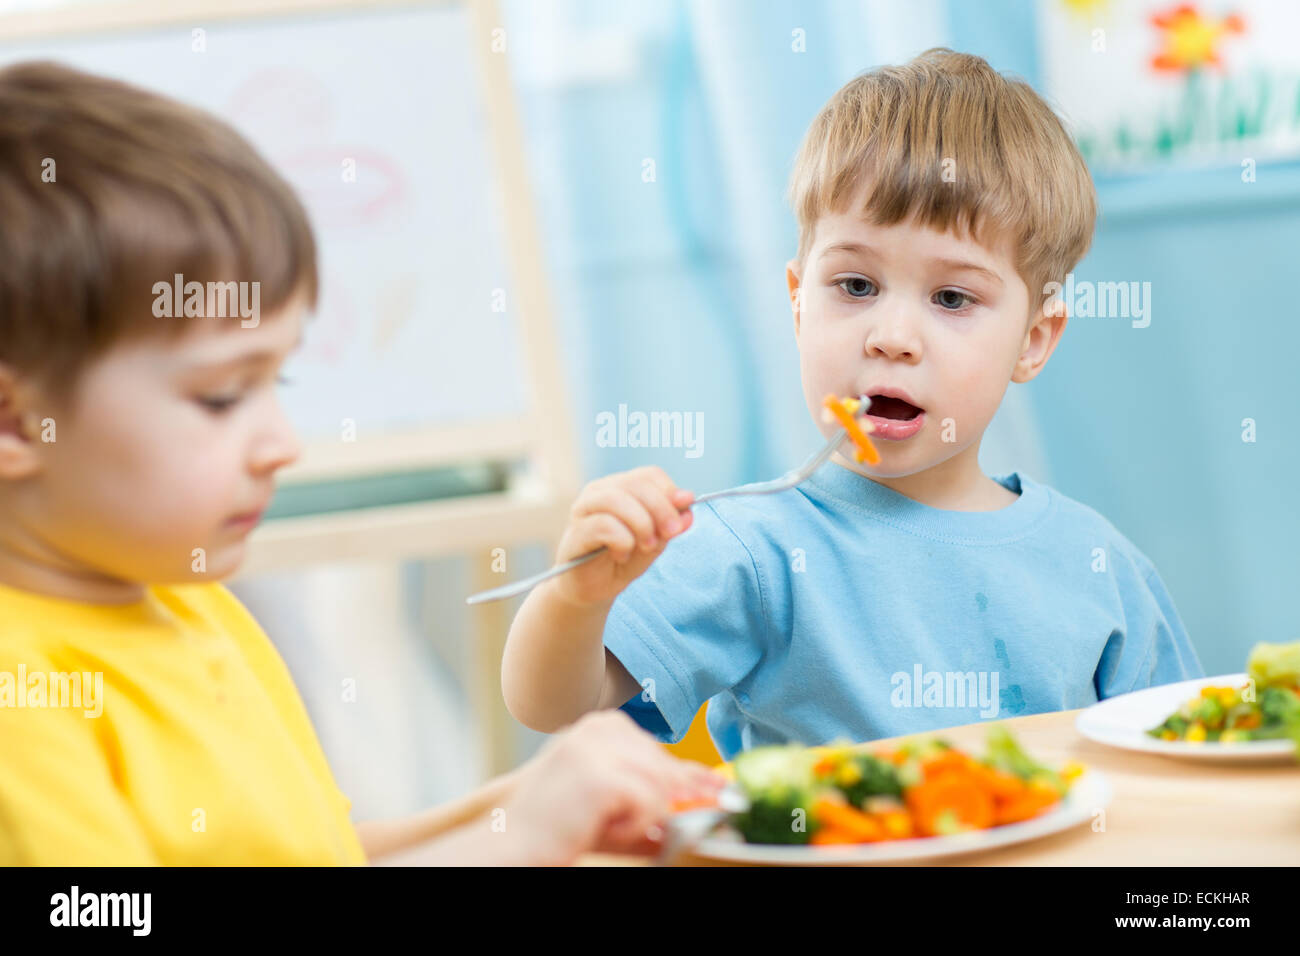 kids eating in kindergarten Stock Photo